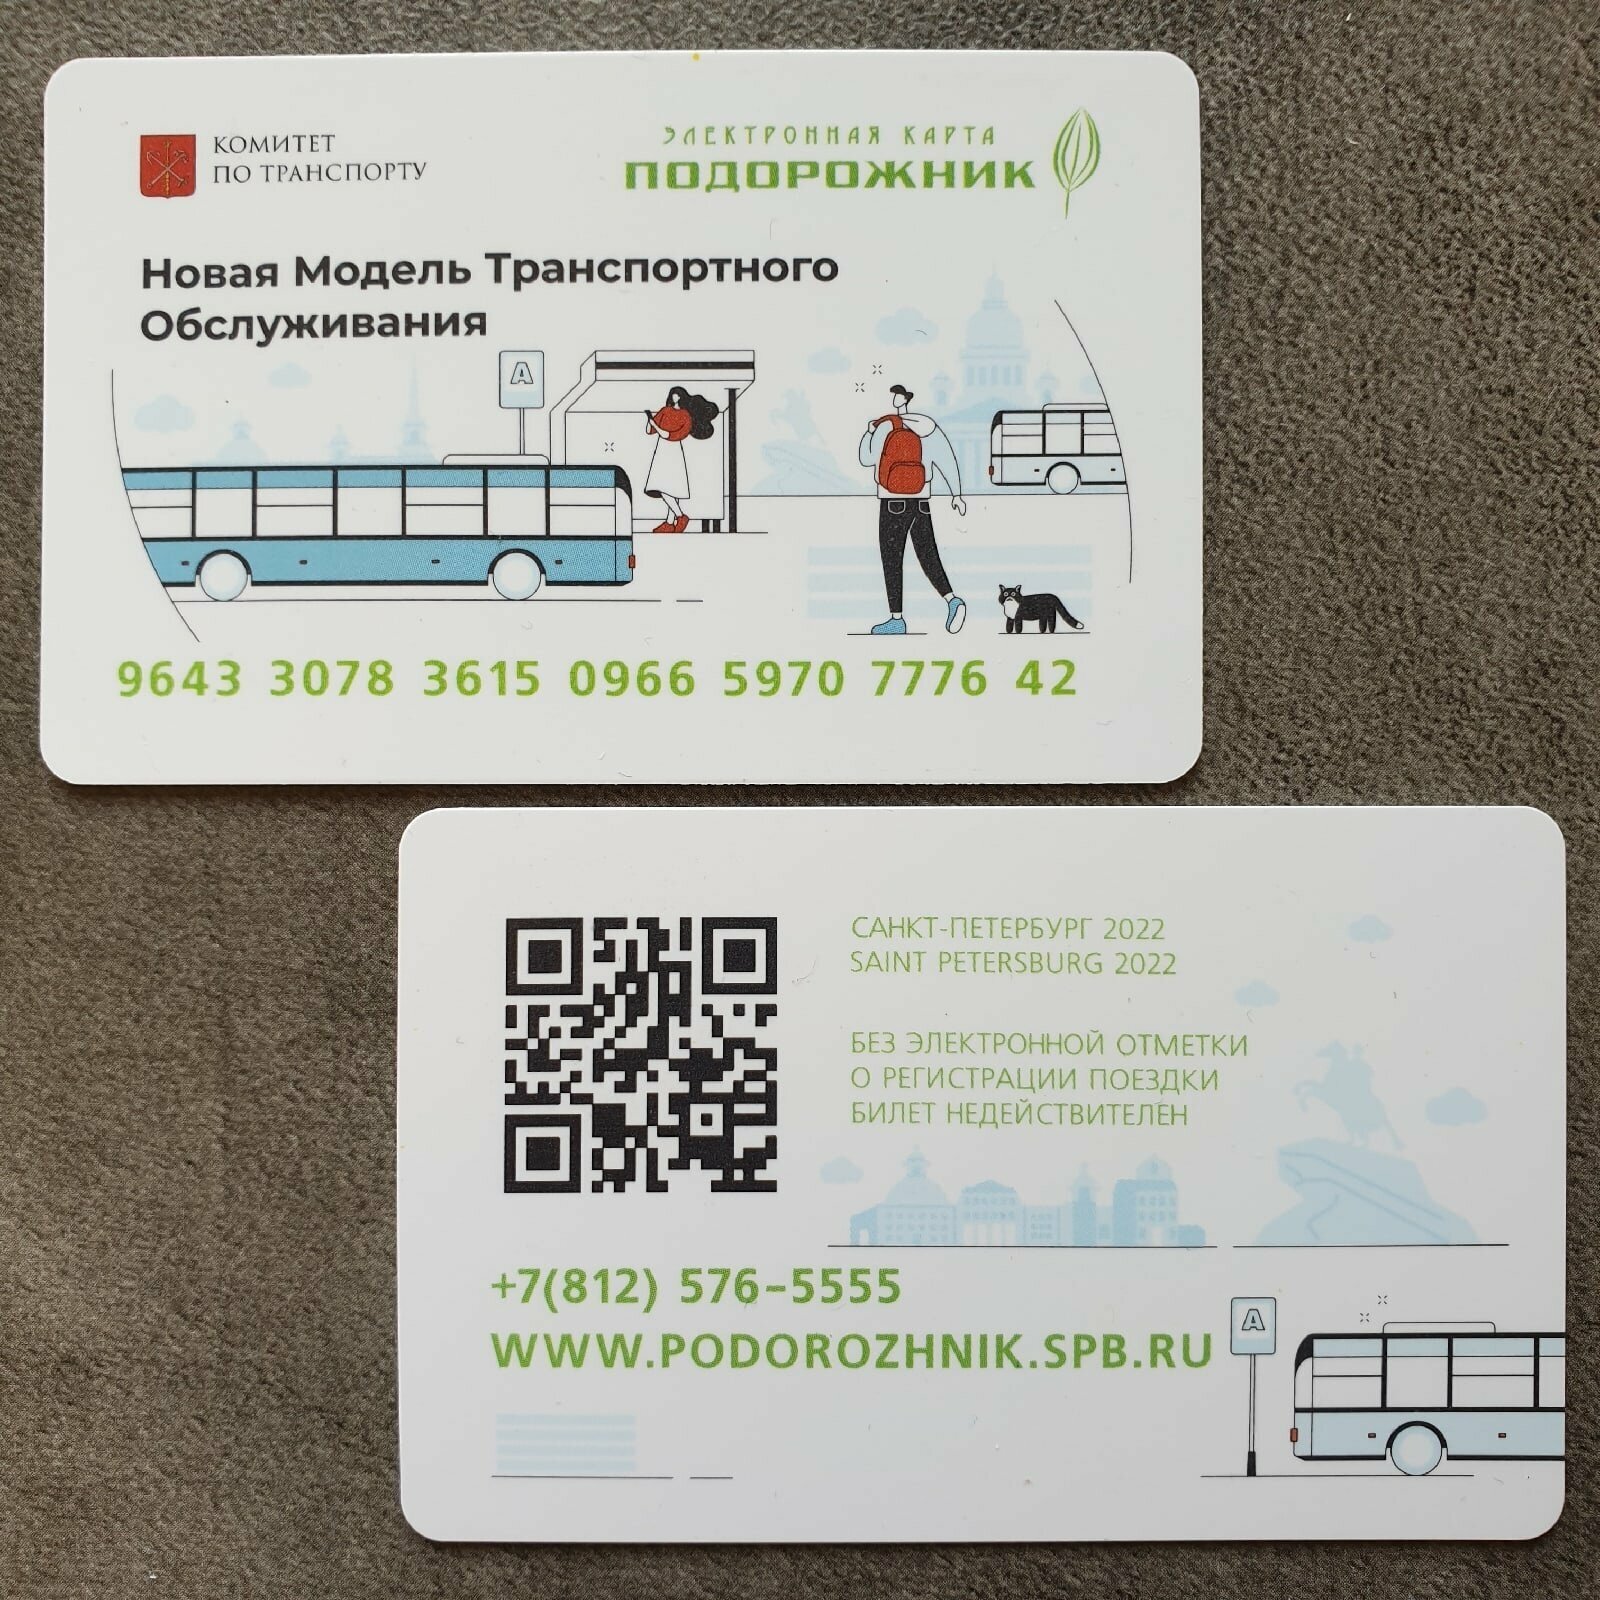 Транспортная карта метро Санкт-Петербурга Подорожник - Новая модель транспортного обслуживания 2022 нмто Комитет по транспорту